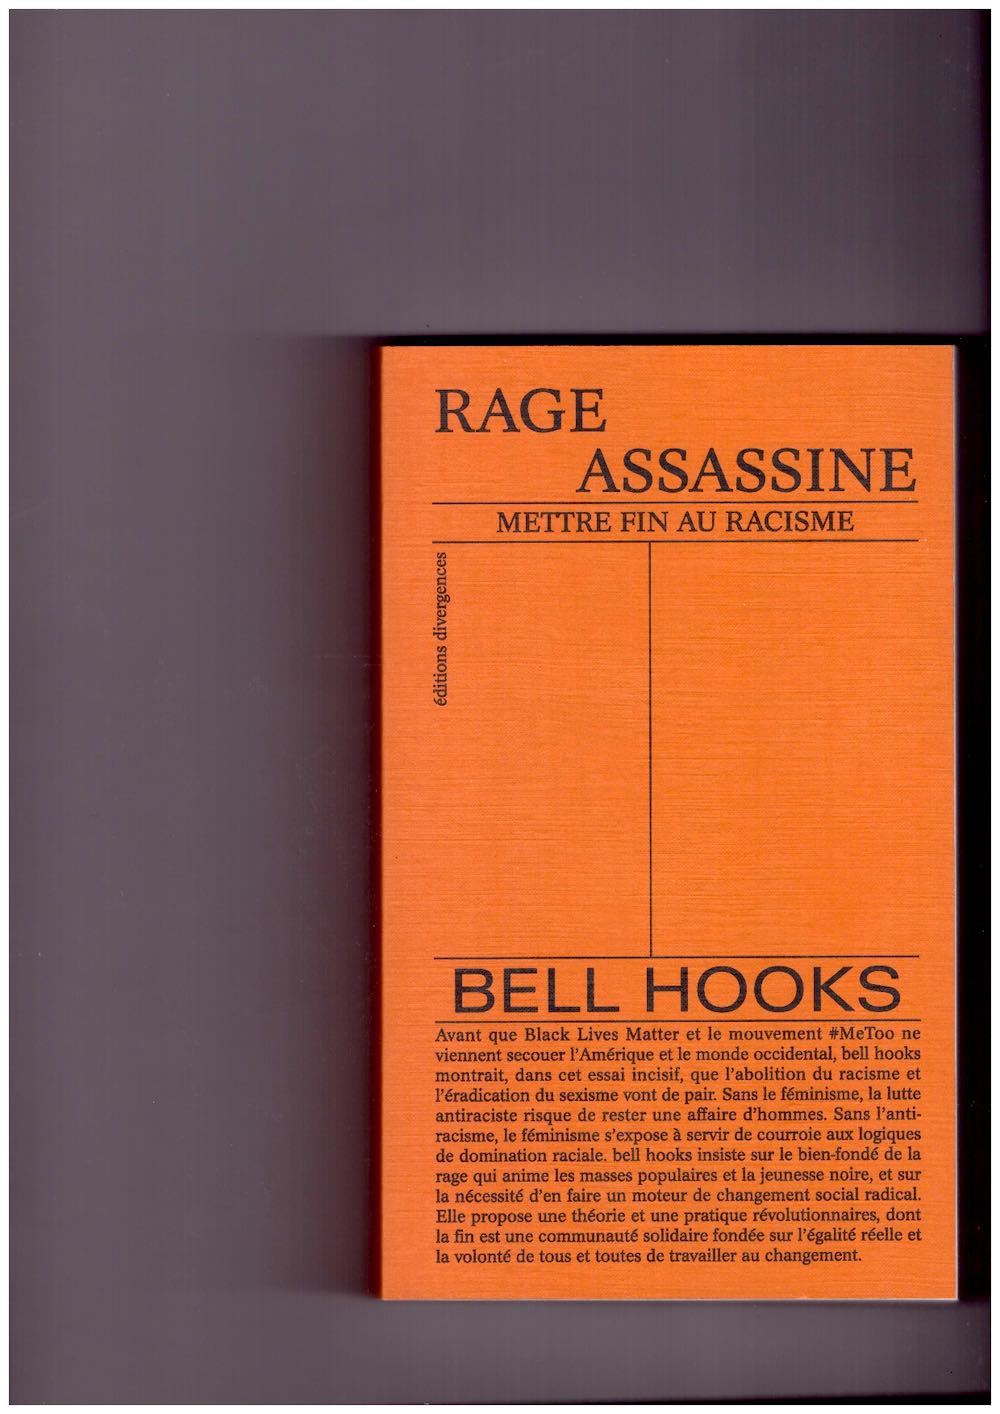 hooks, bell - Rage Assassine